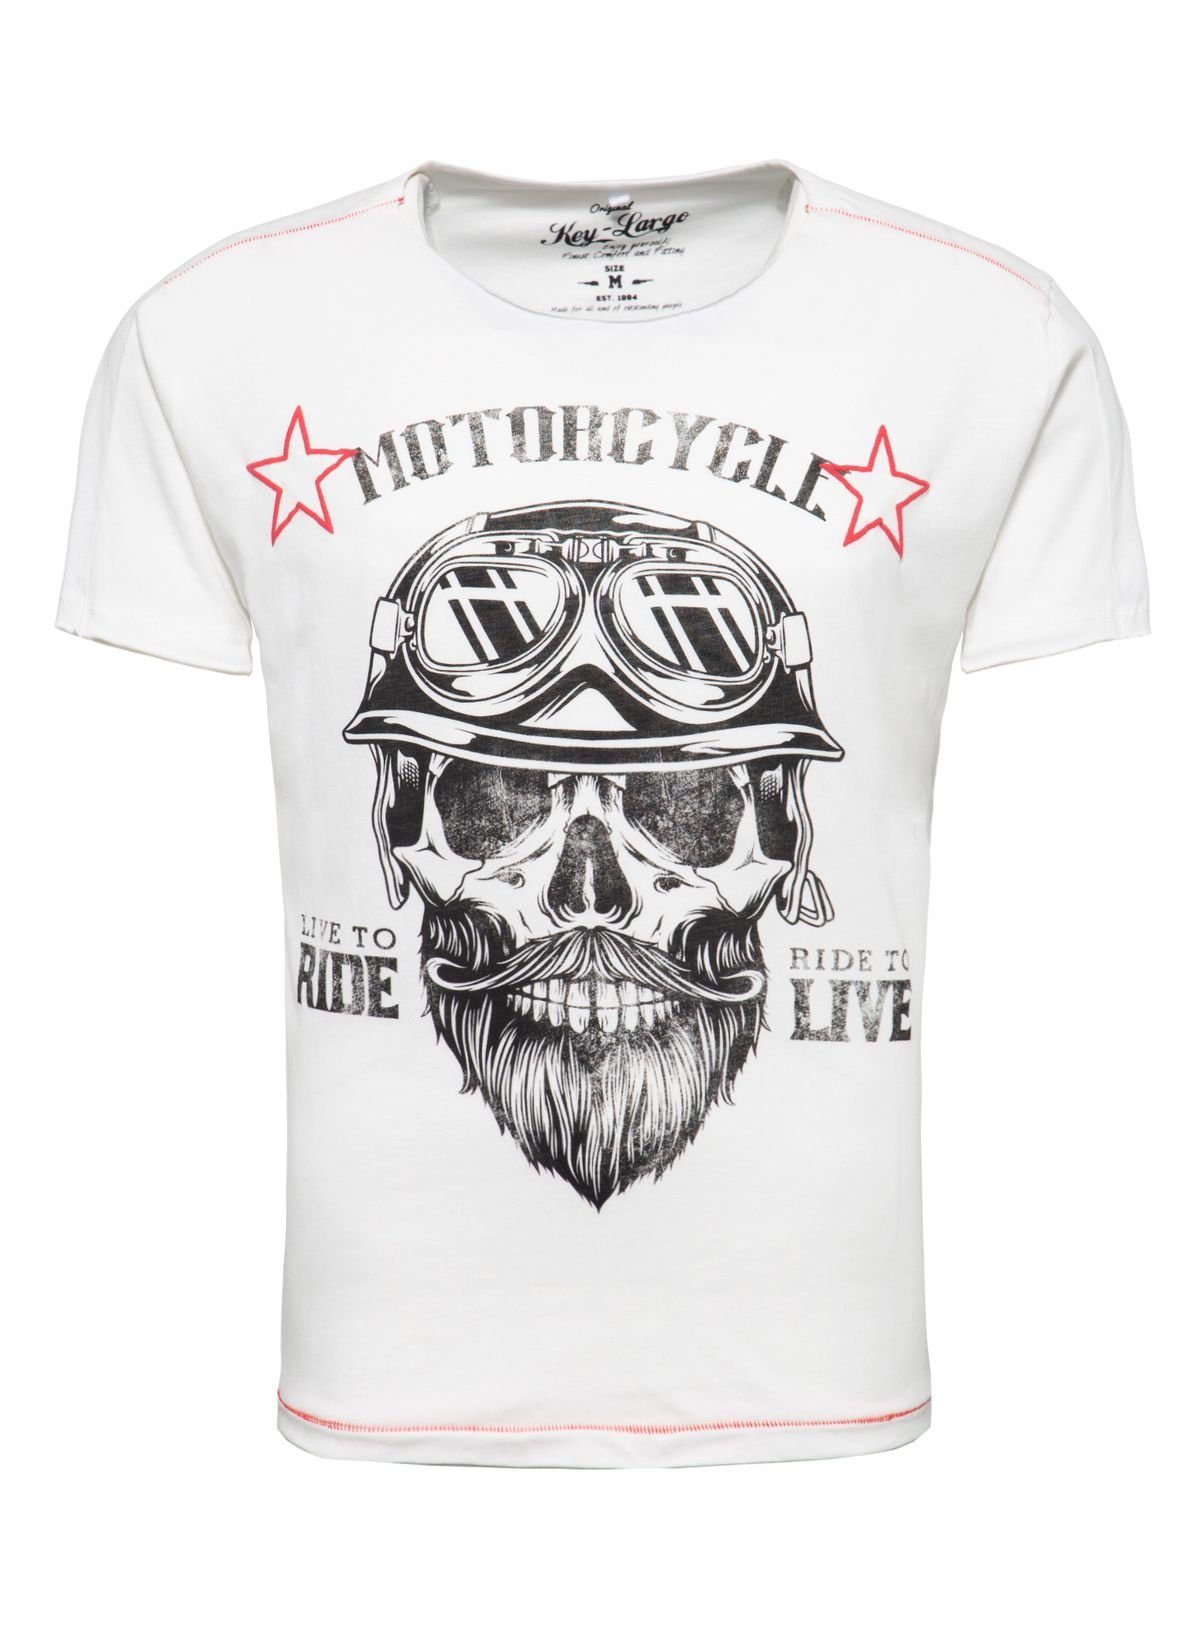 Key Largo T-Shirt für Herren Bearded Biker Skull Print Motiv vintage Look MT00203 Rundhalsauschnitt bedruckt kurzarm slim fit Weiß